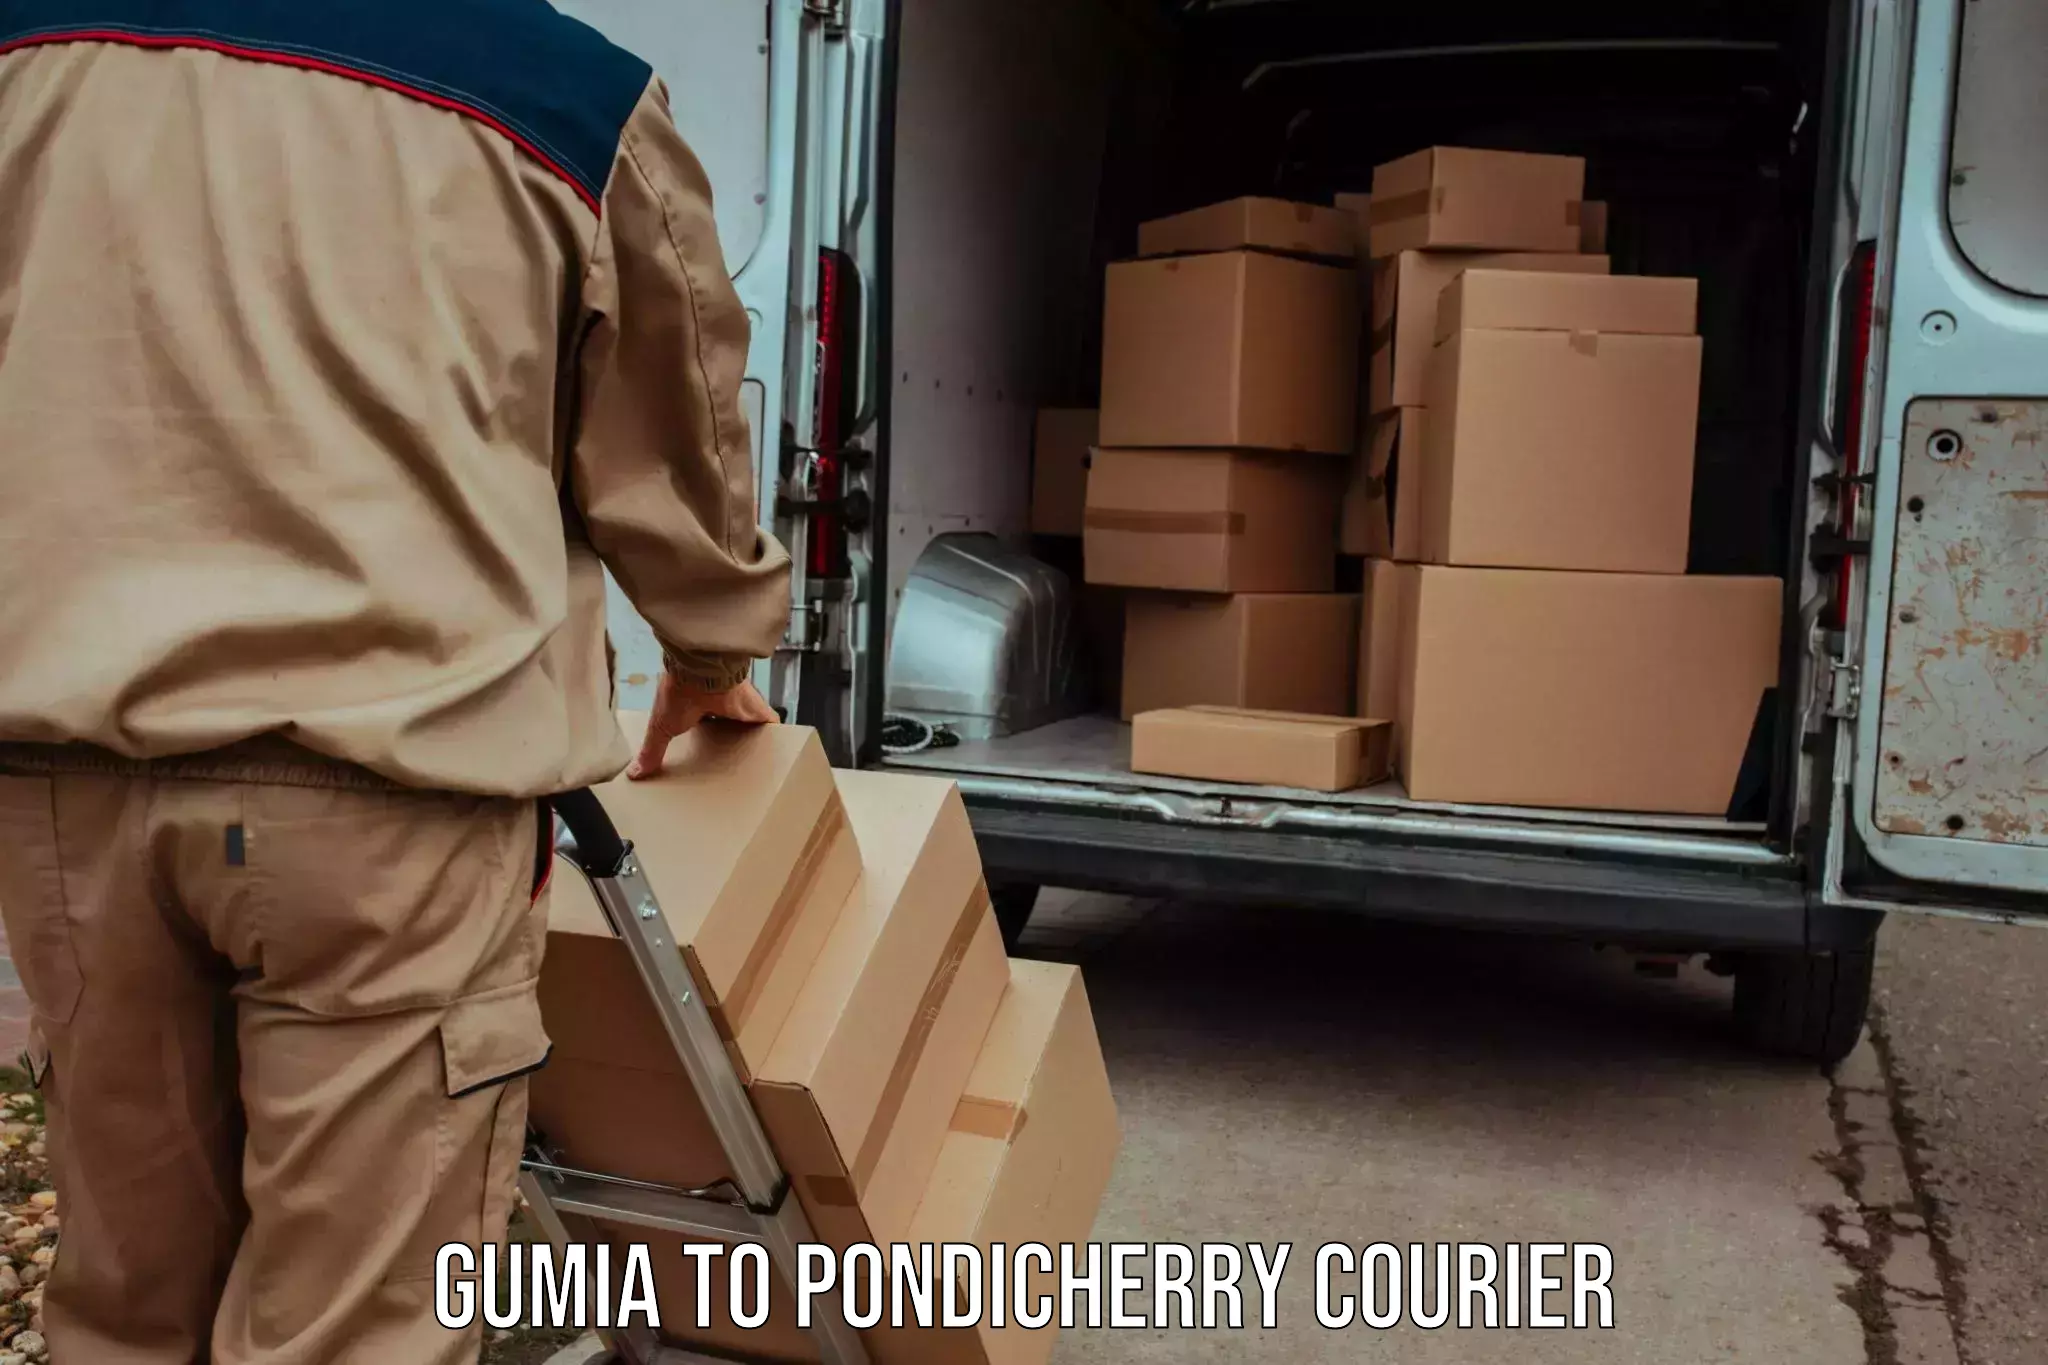 Courier service comparison Gumia to Pondicherry